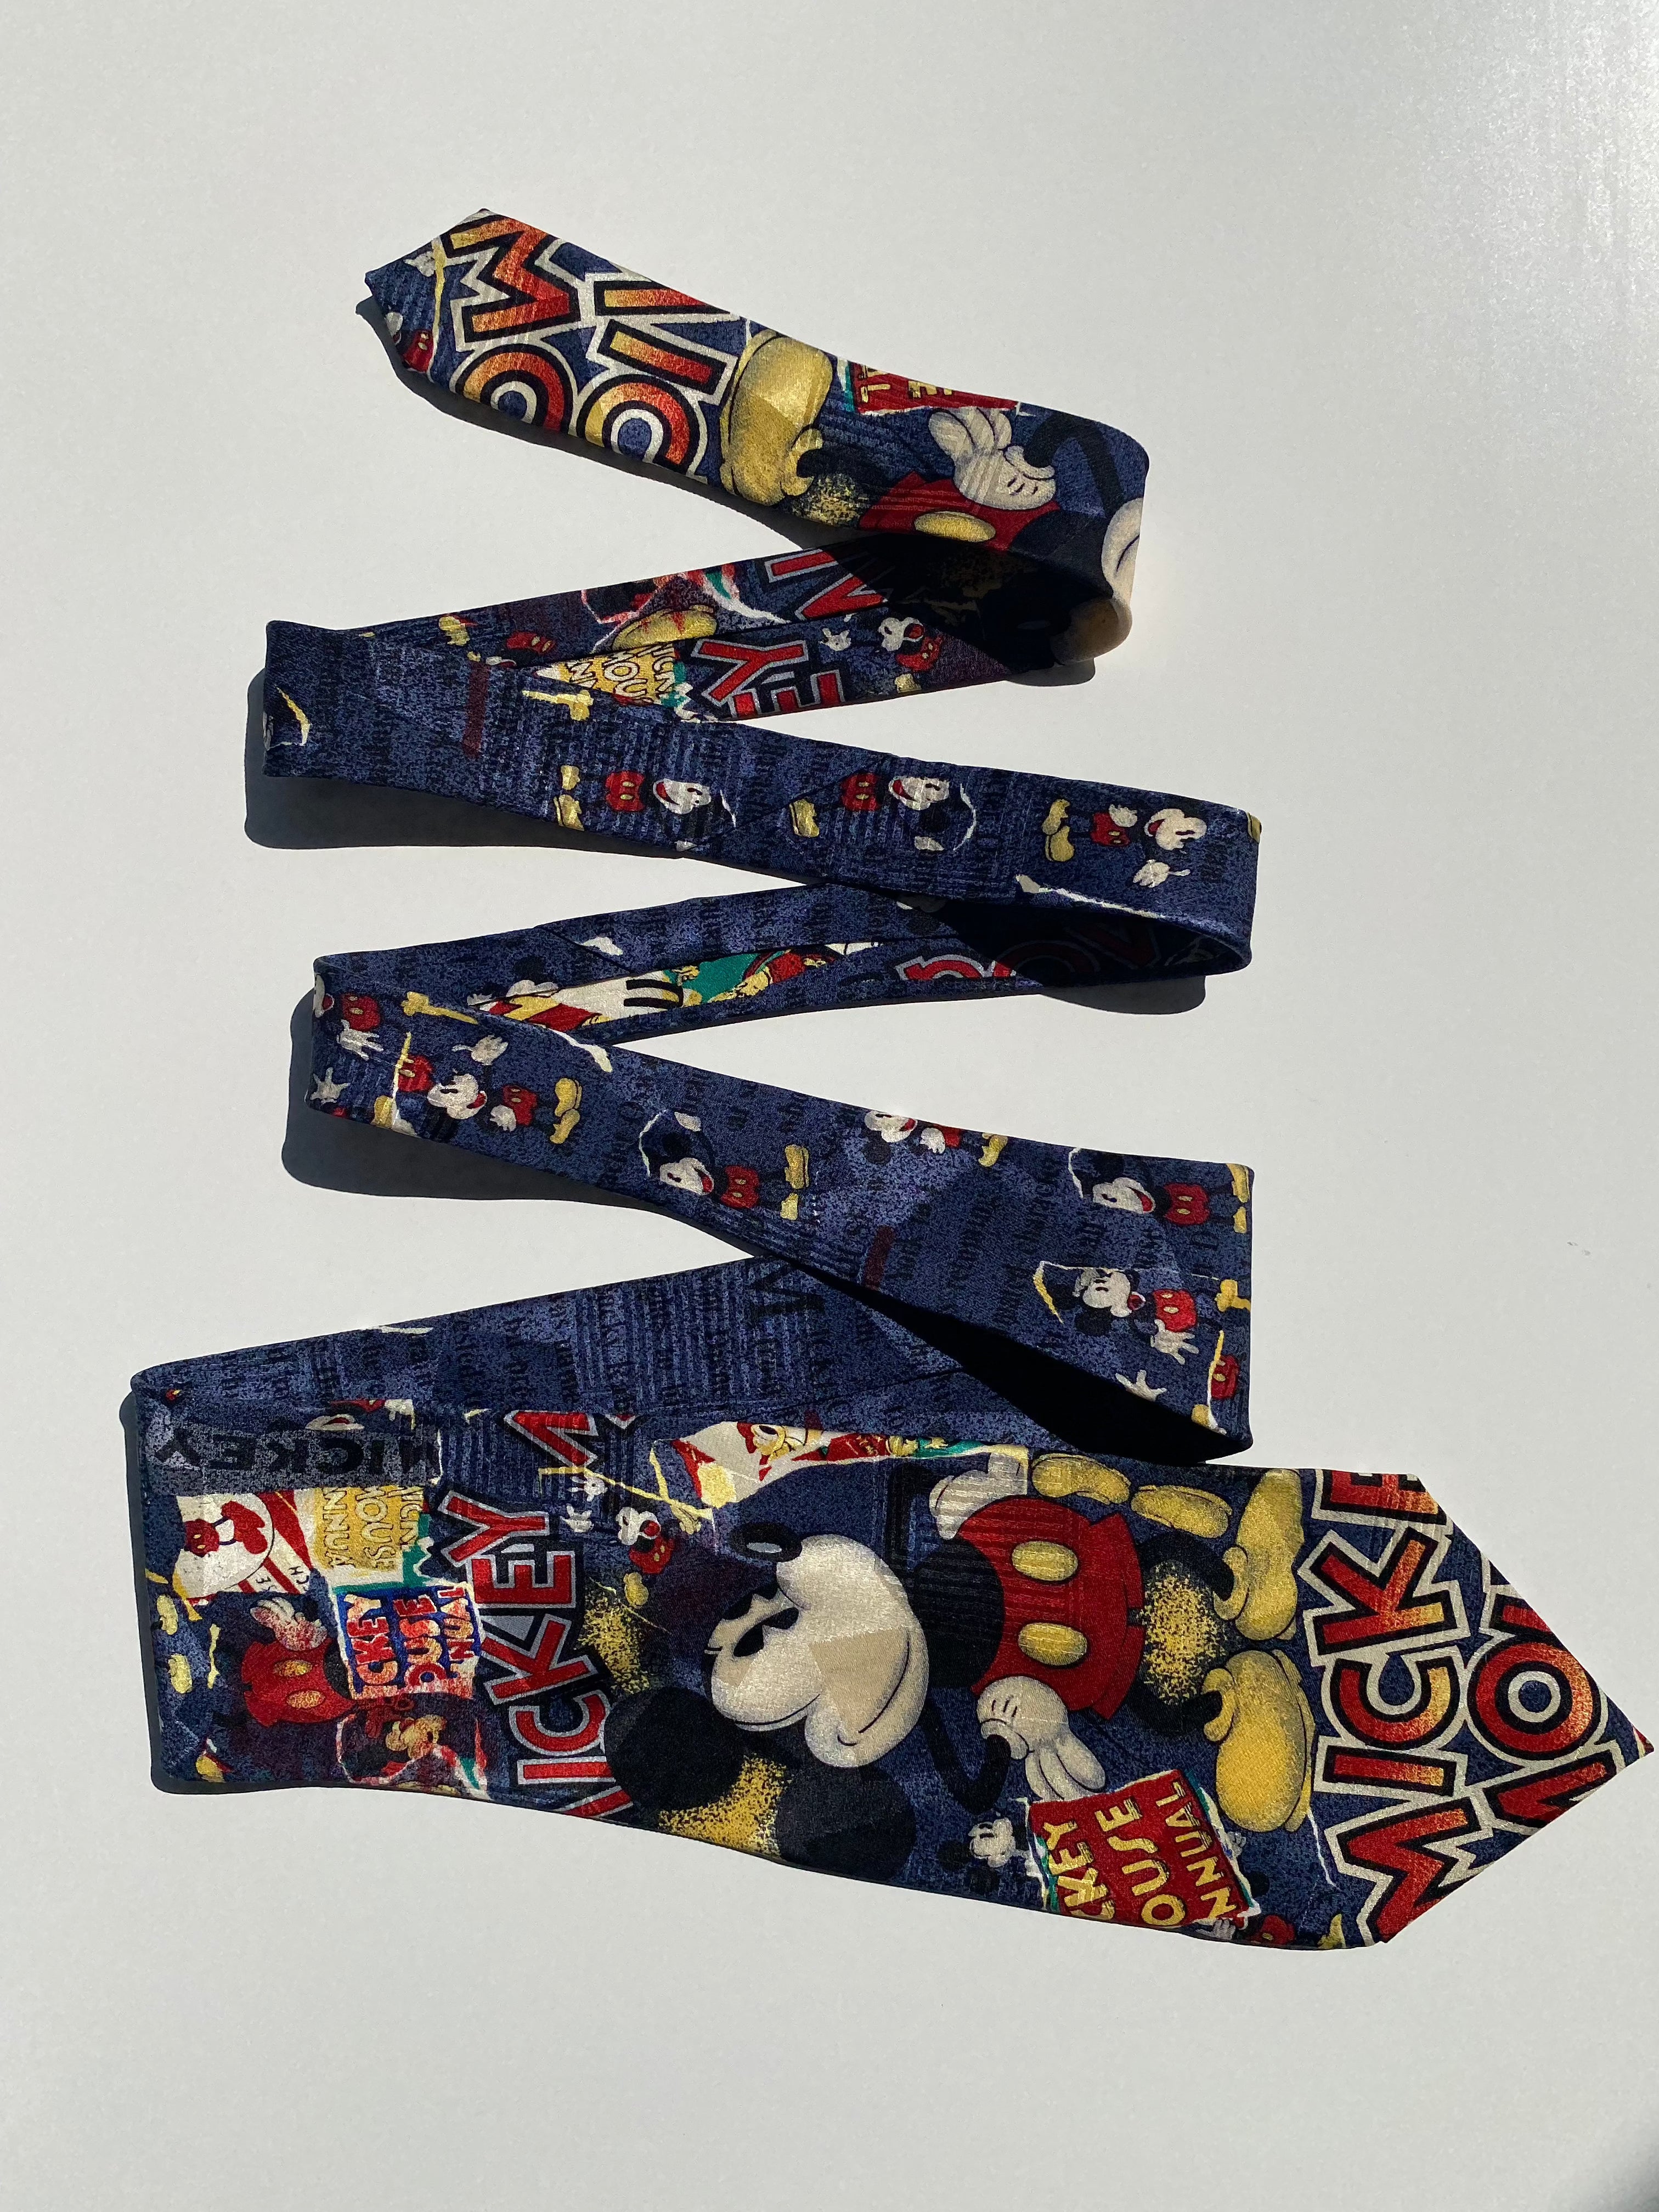 Vintage Disney Silk Micky Mouse Tie - Balagan Vintage Ties crazy print, graphic, graphic ties, printed ties, vintage, vintage ties